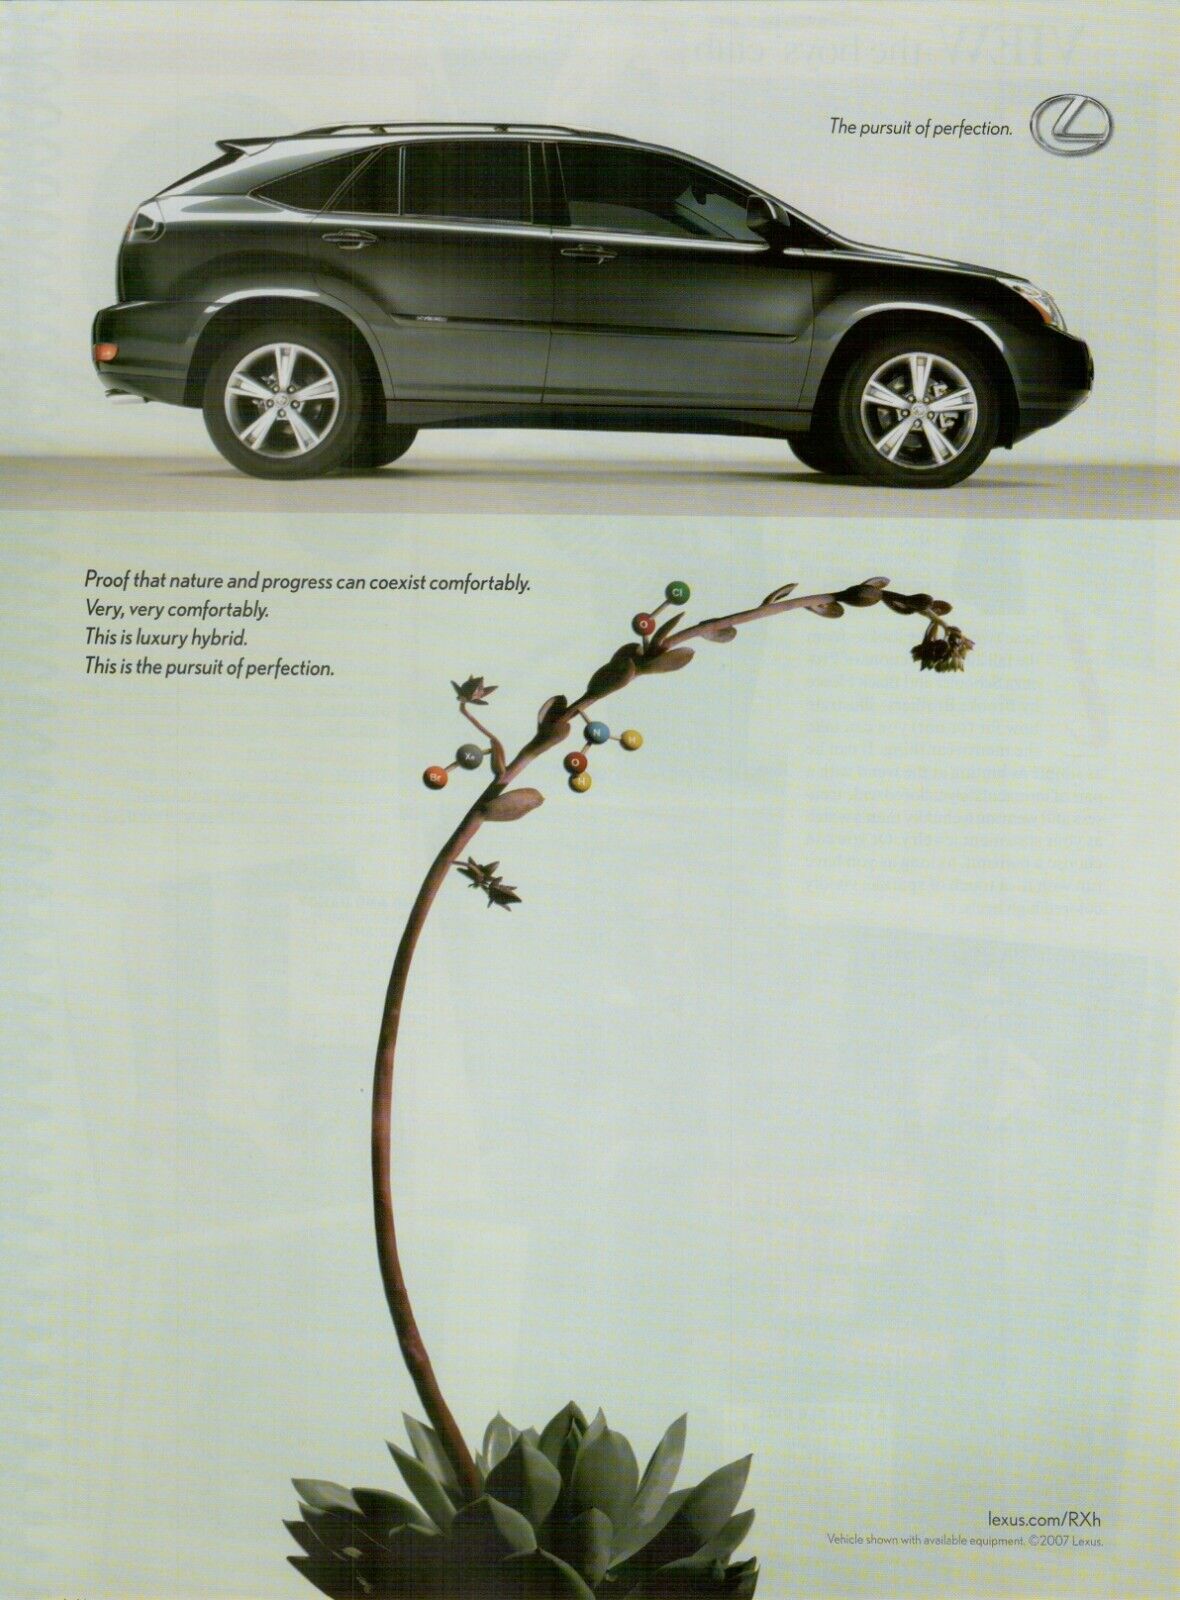 2007 Lexus Luxury Hybrid SUV Nature & Progress Coexist Photo VINTAGE PRINT AD